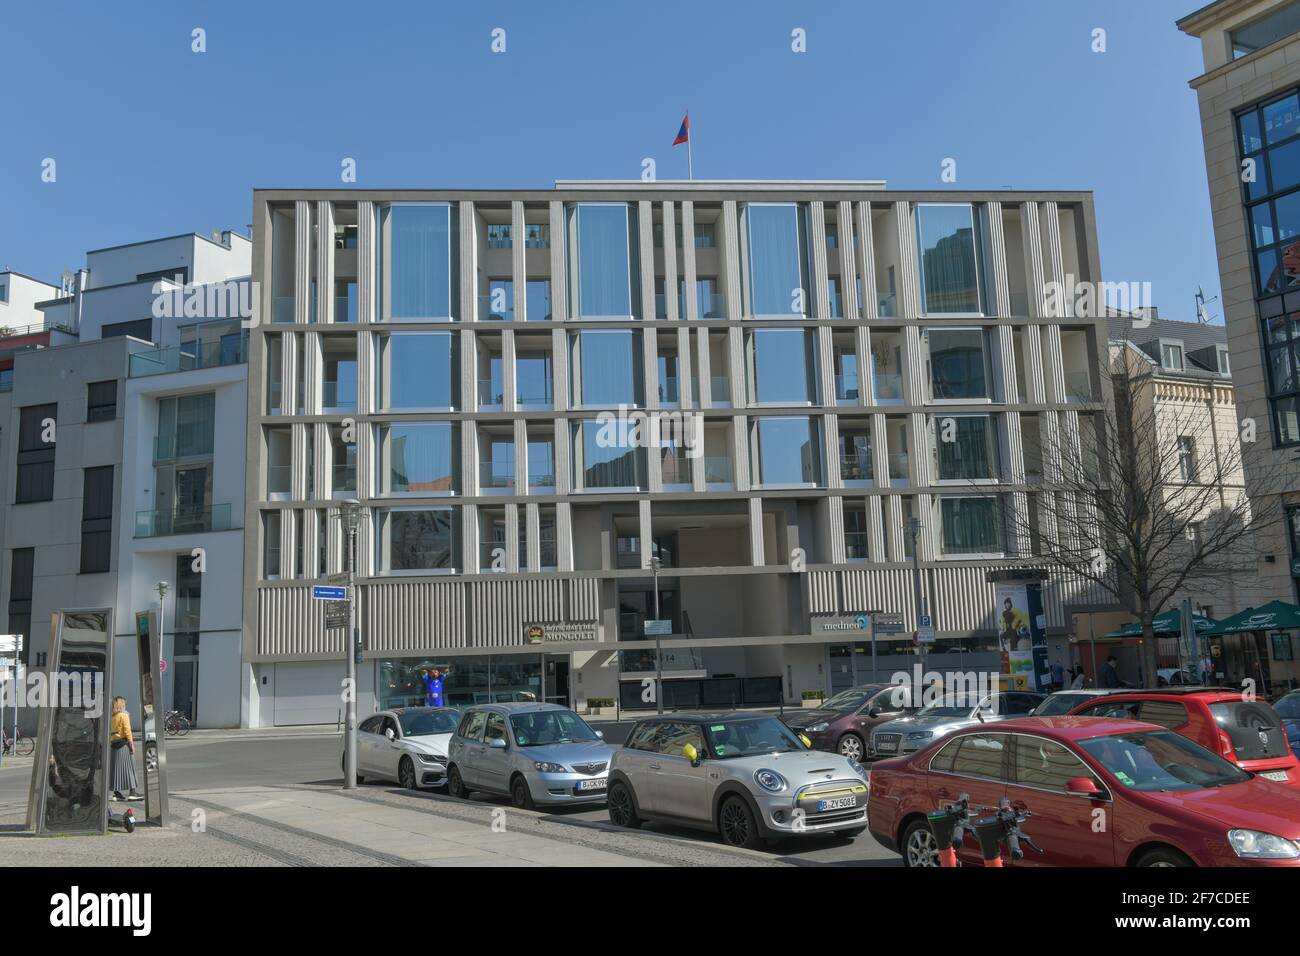 Botschaft der Mongolei, Hausvogteiplatz, Mitte, Berlin, Deutschland Stock Photo